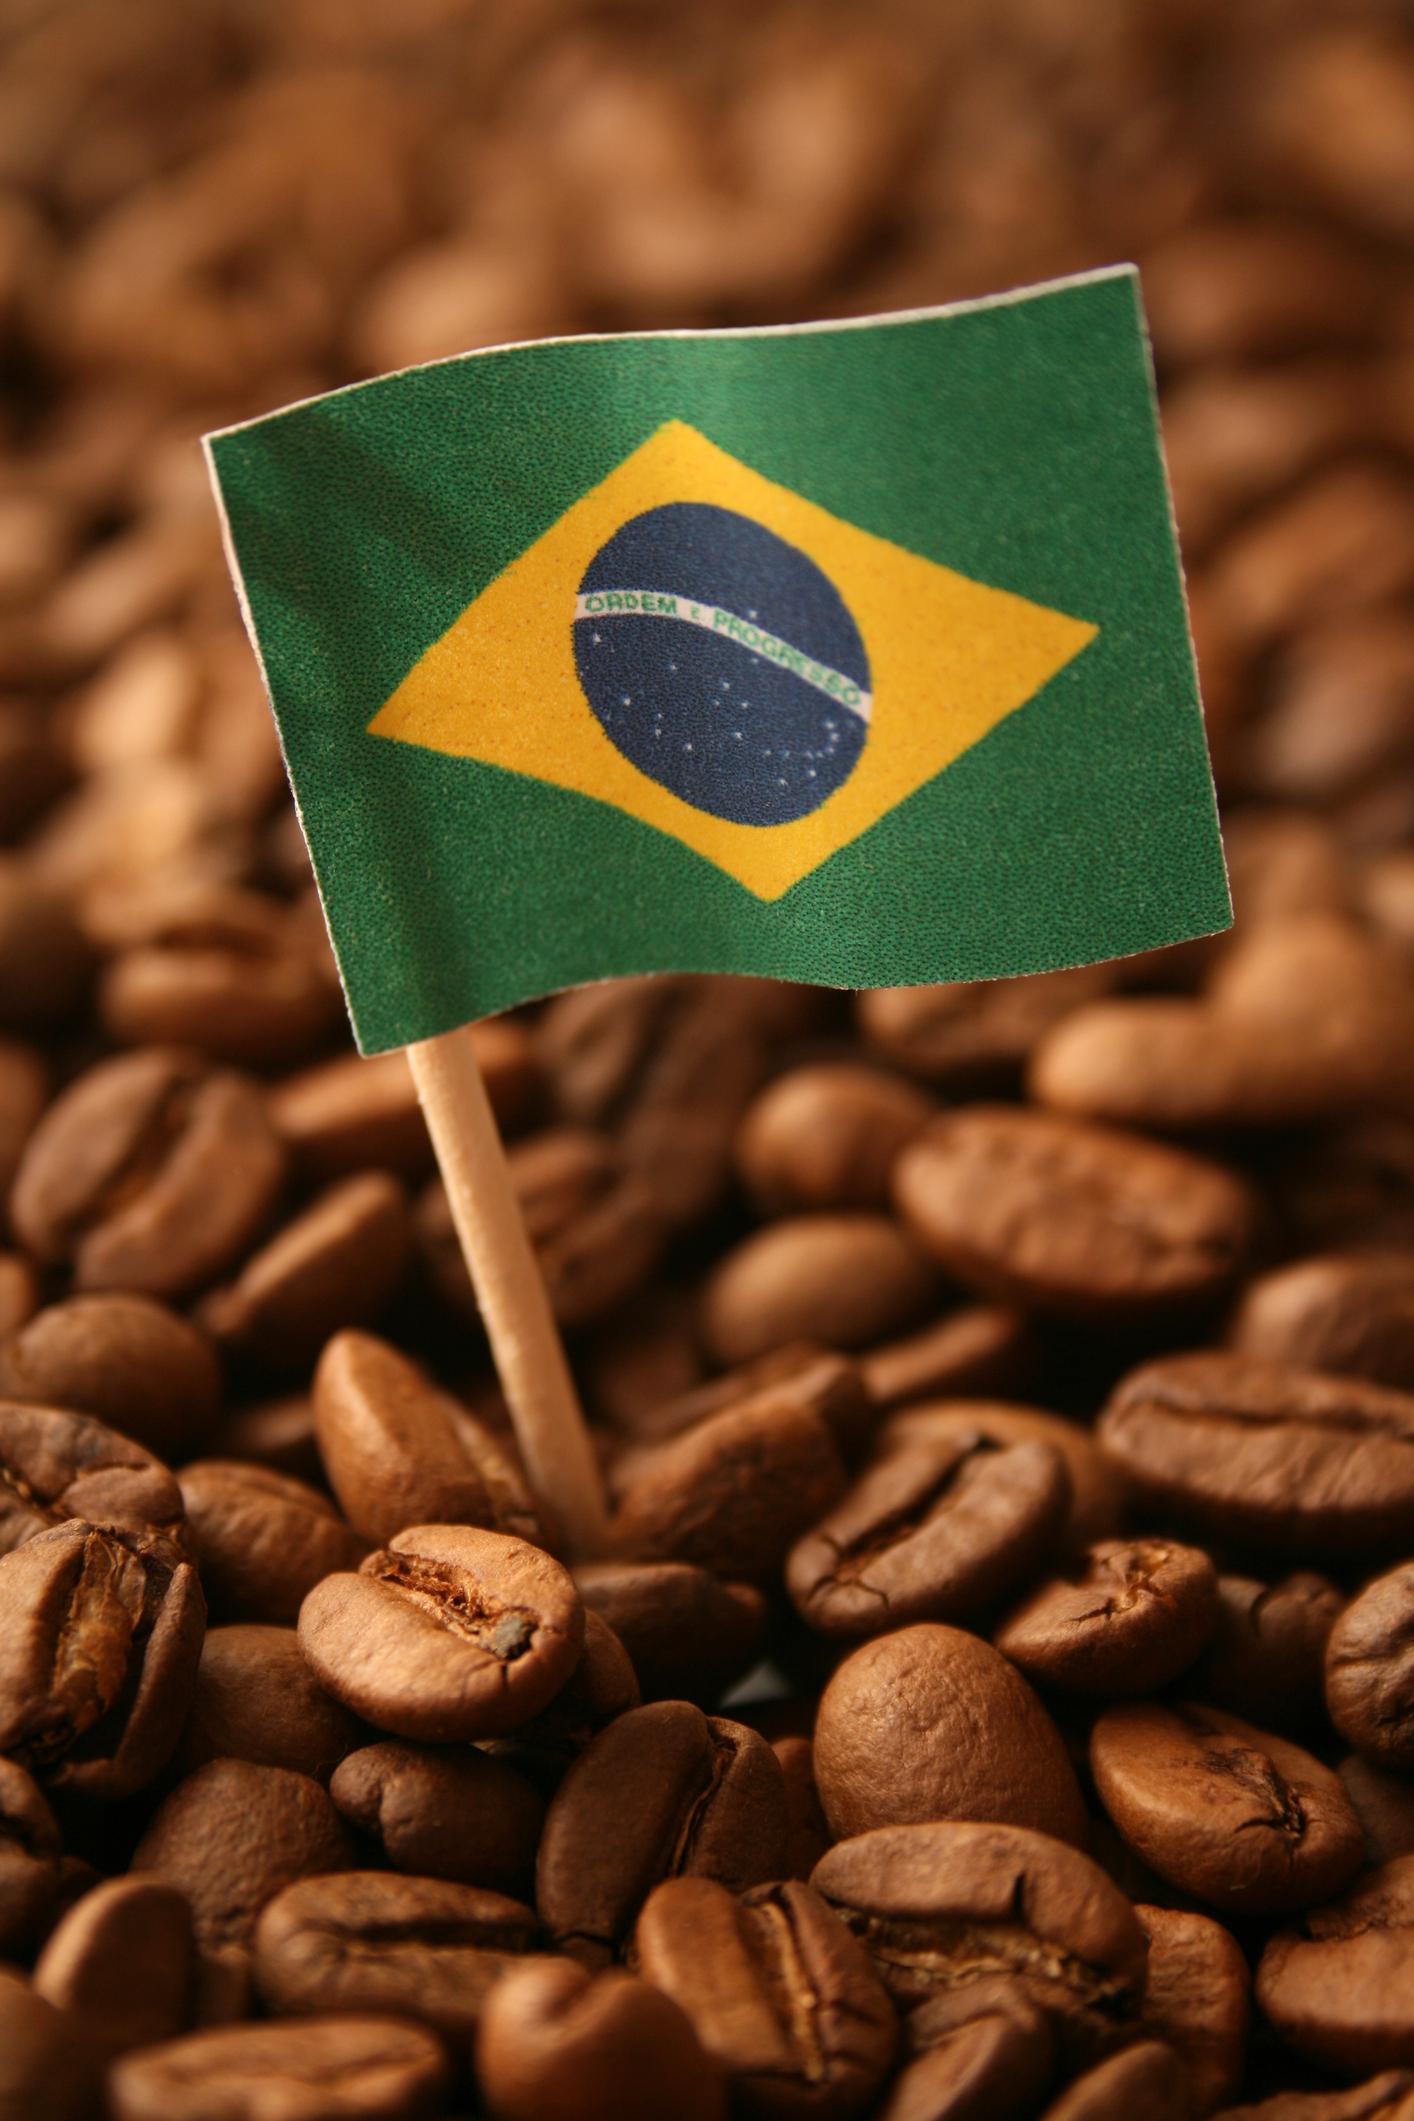 La nueva revolución en el mundo del café se llama Vertuov